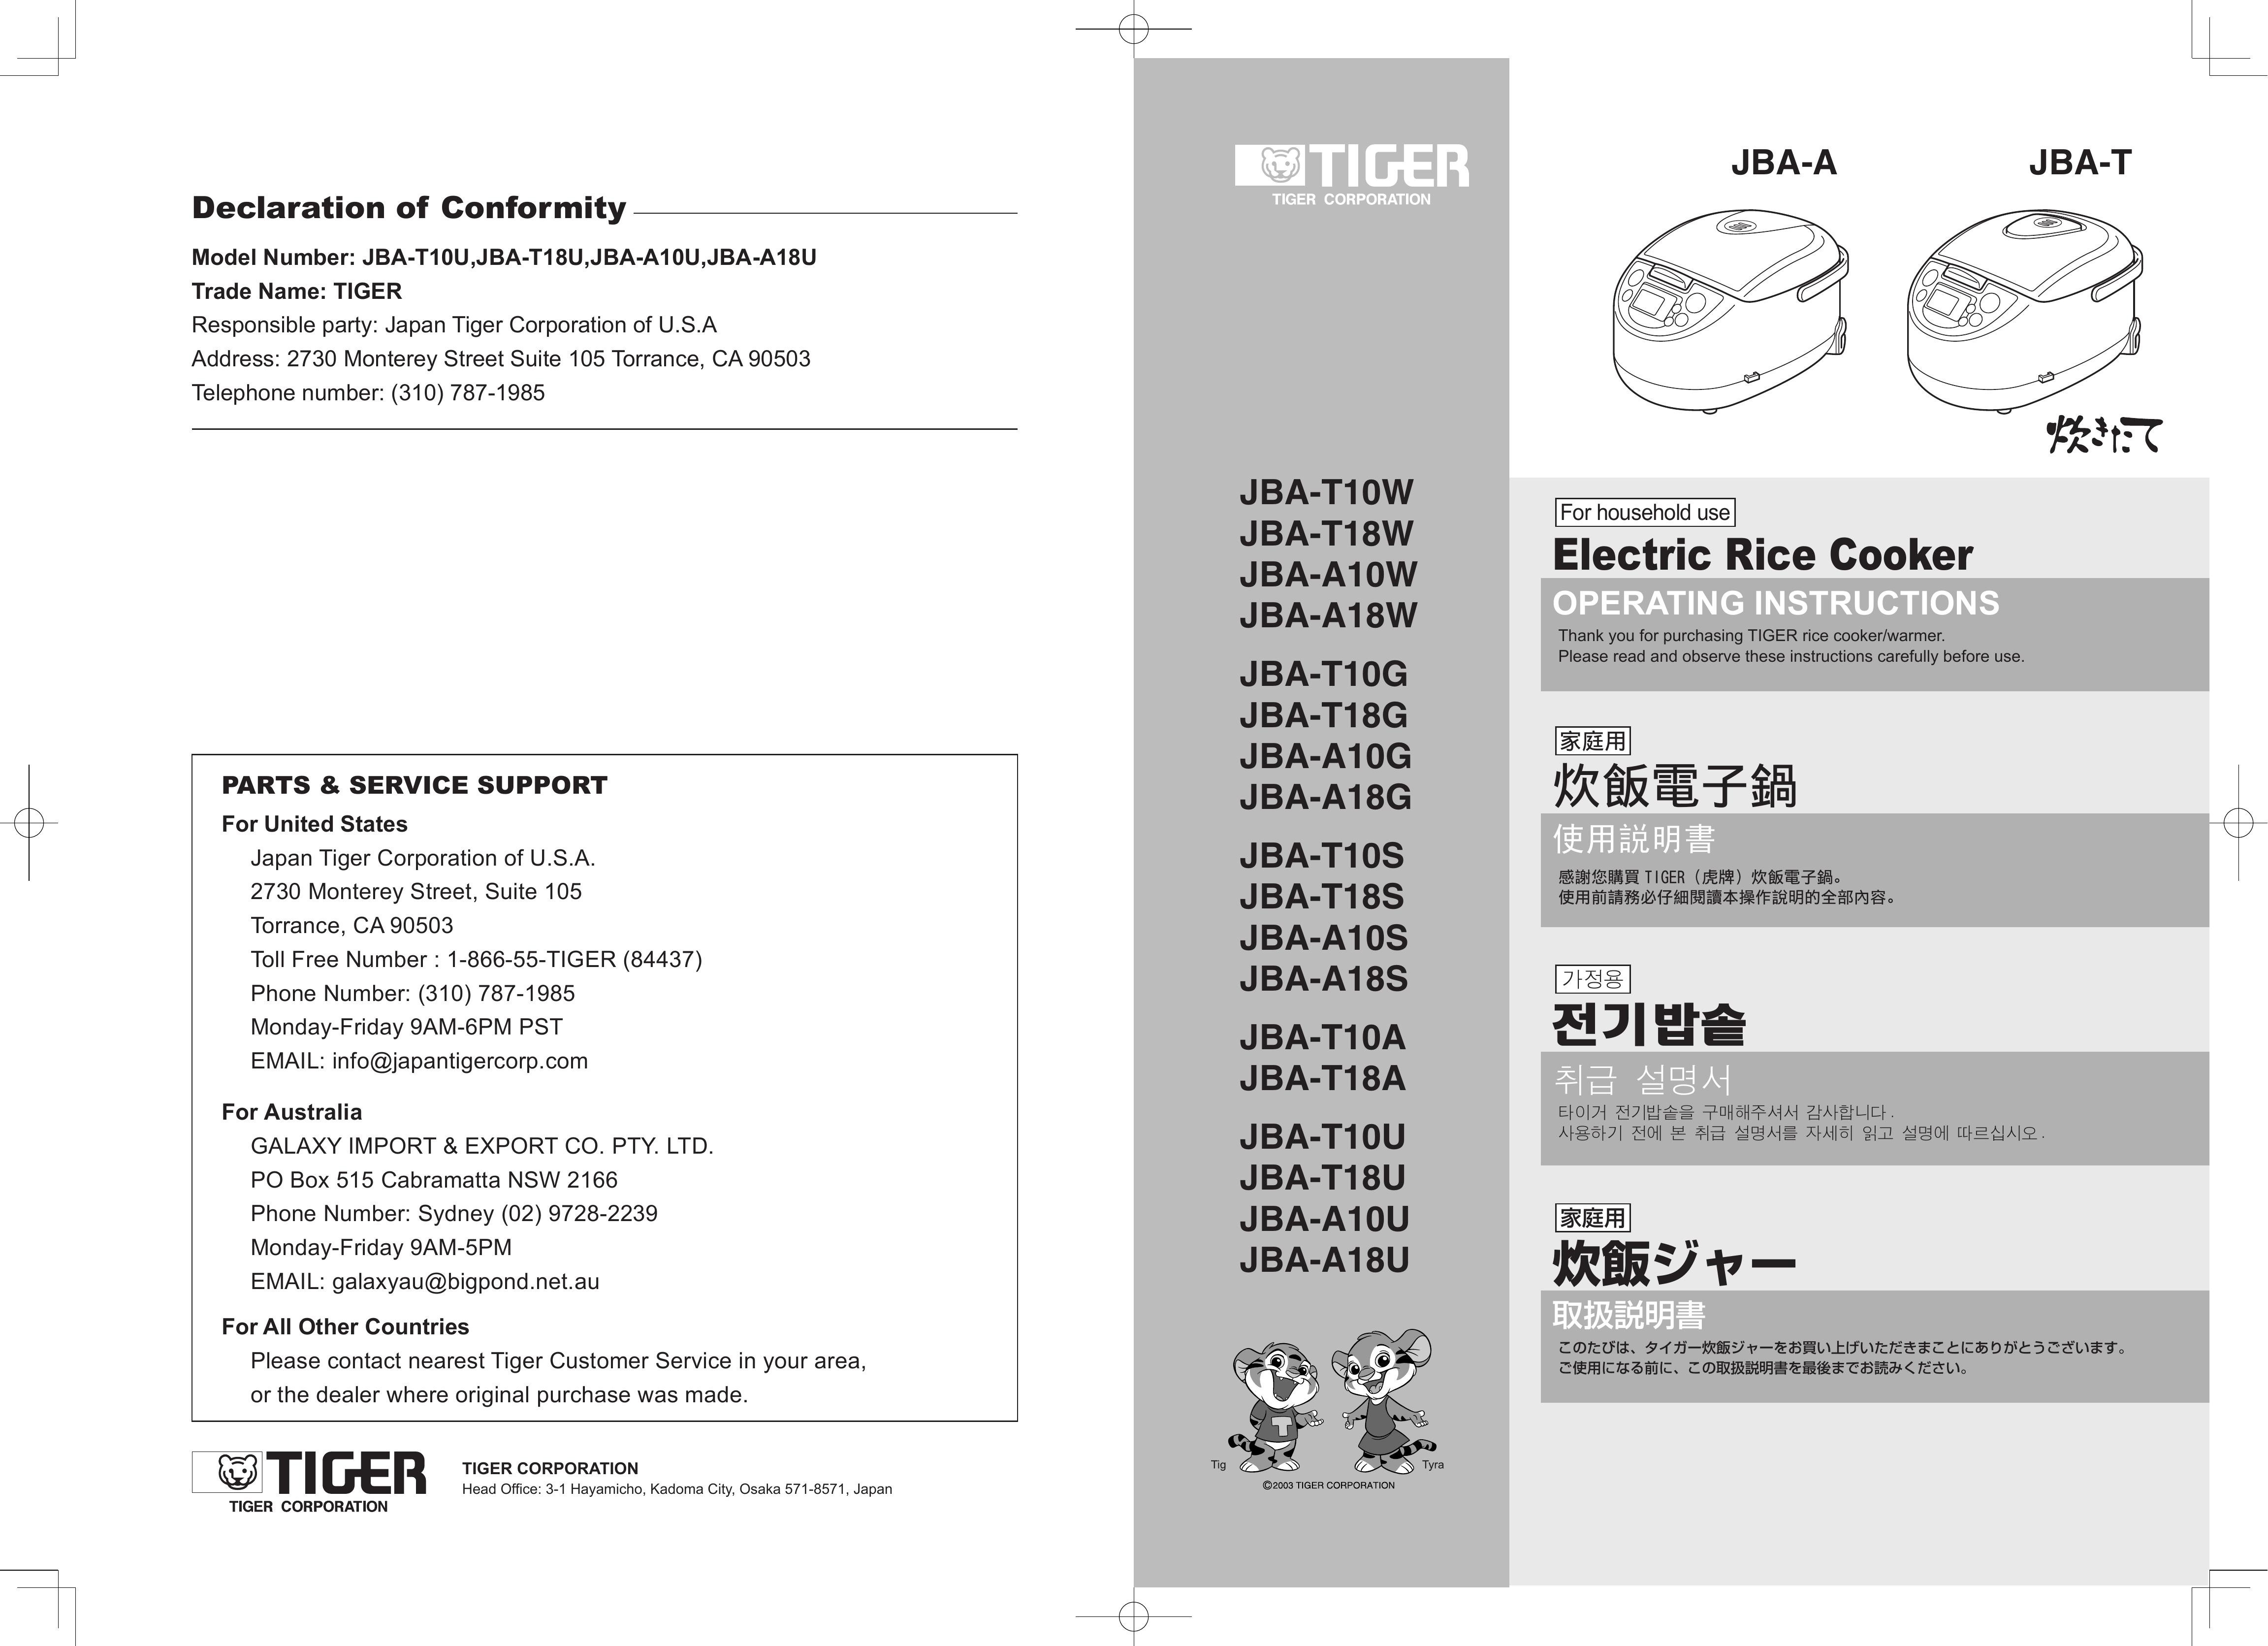 Tiger Products Co., Ltd JBA-T10U Rice Cooker User Manual